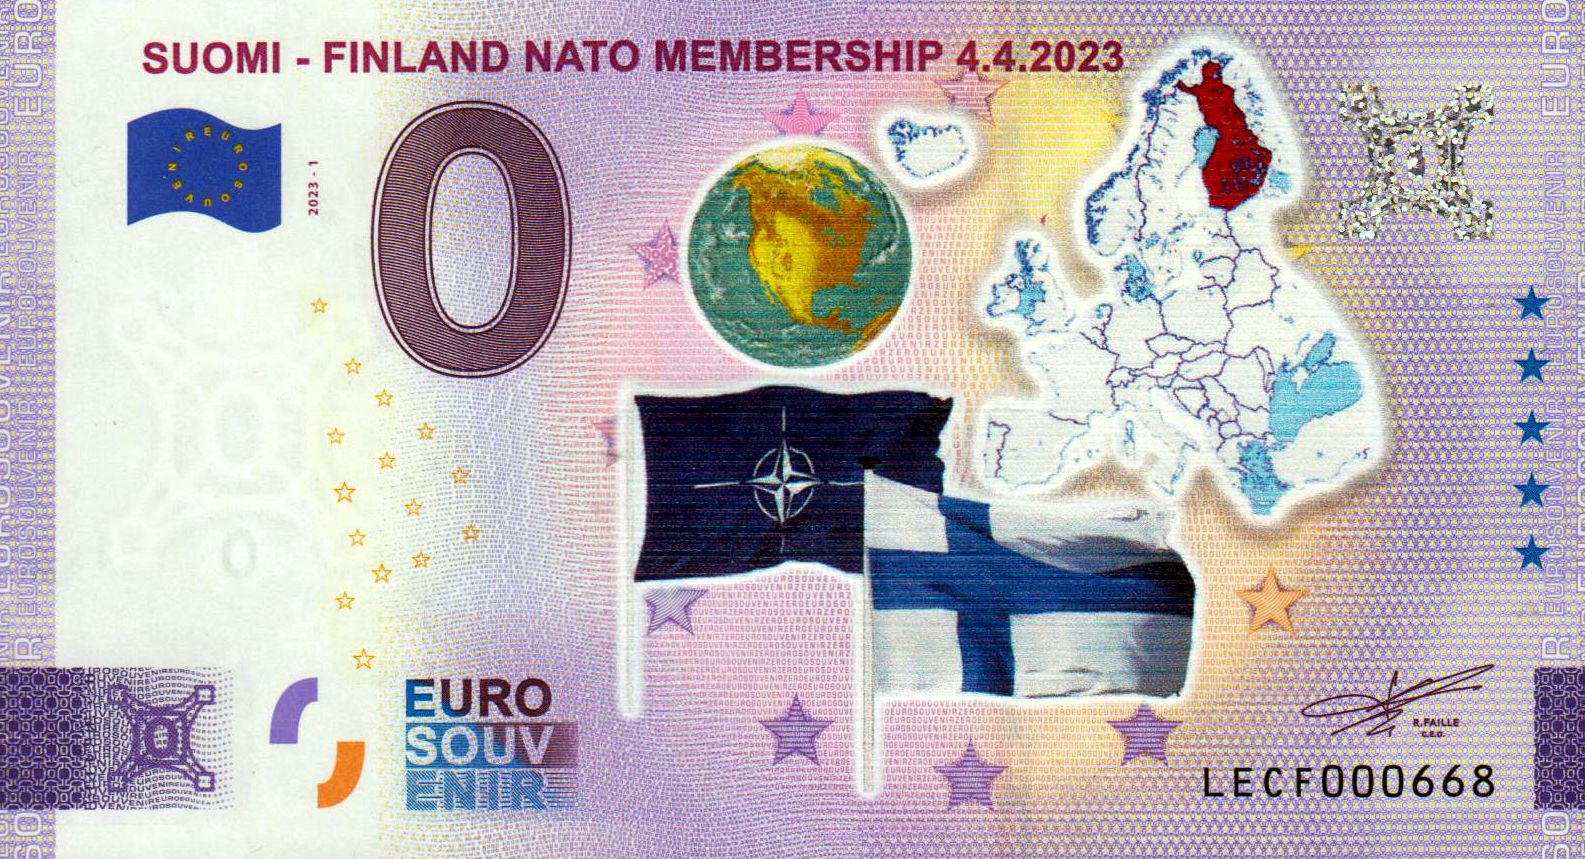 Suomi - Finland NATO Membership 2023-1, coloriert